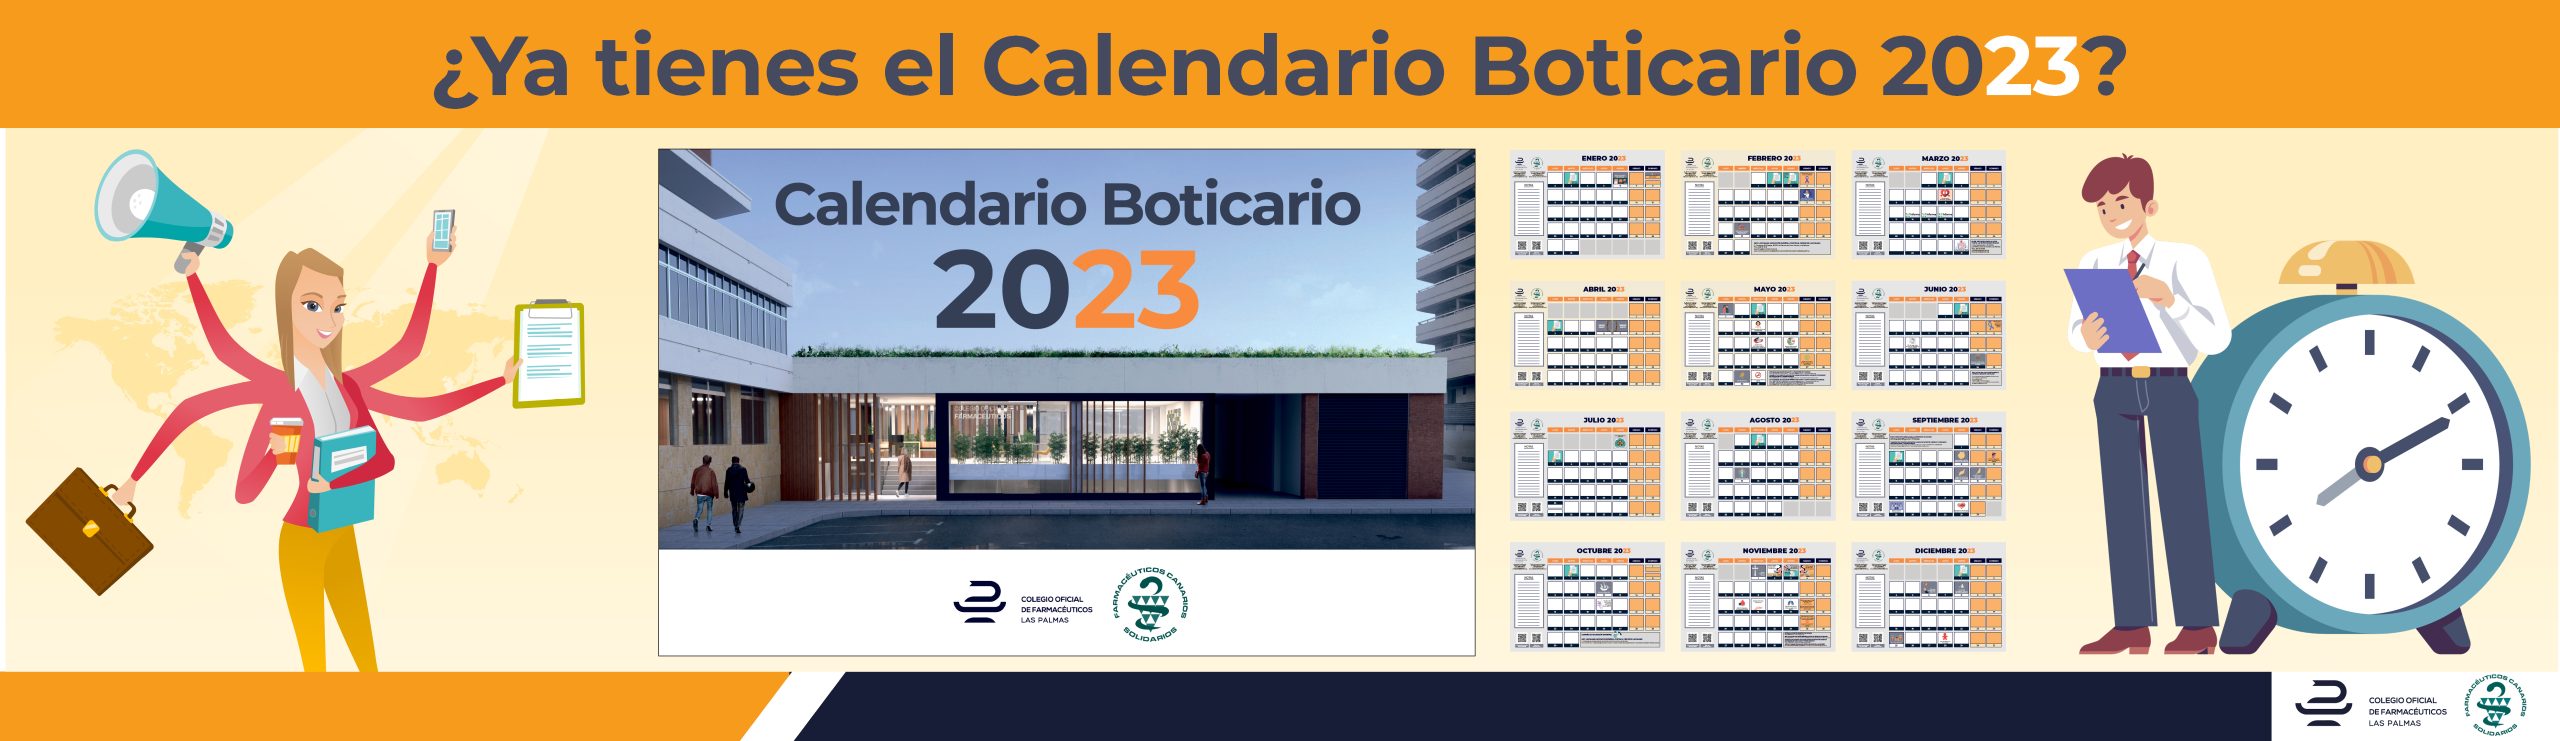 Calendario boticario2023